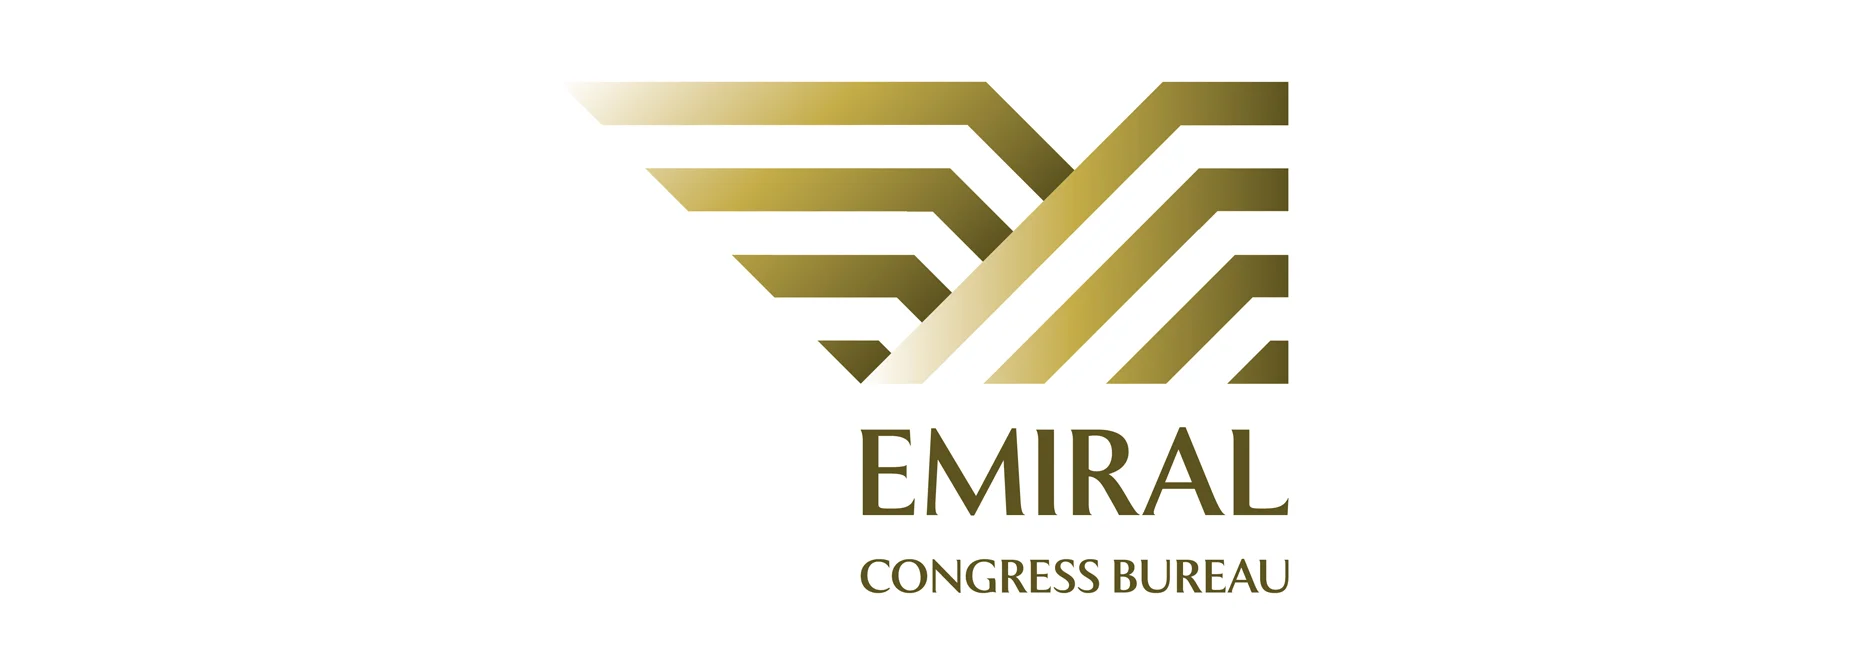 emiral congress bureau lp